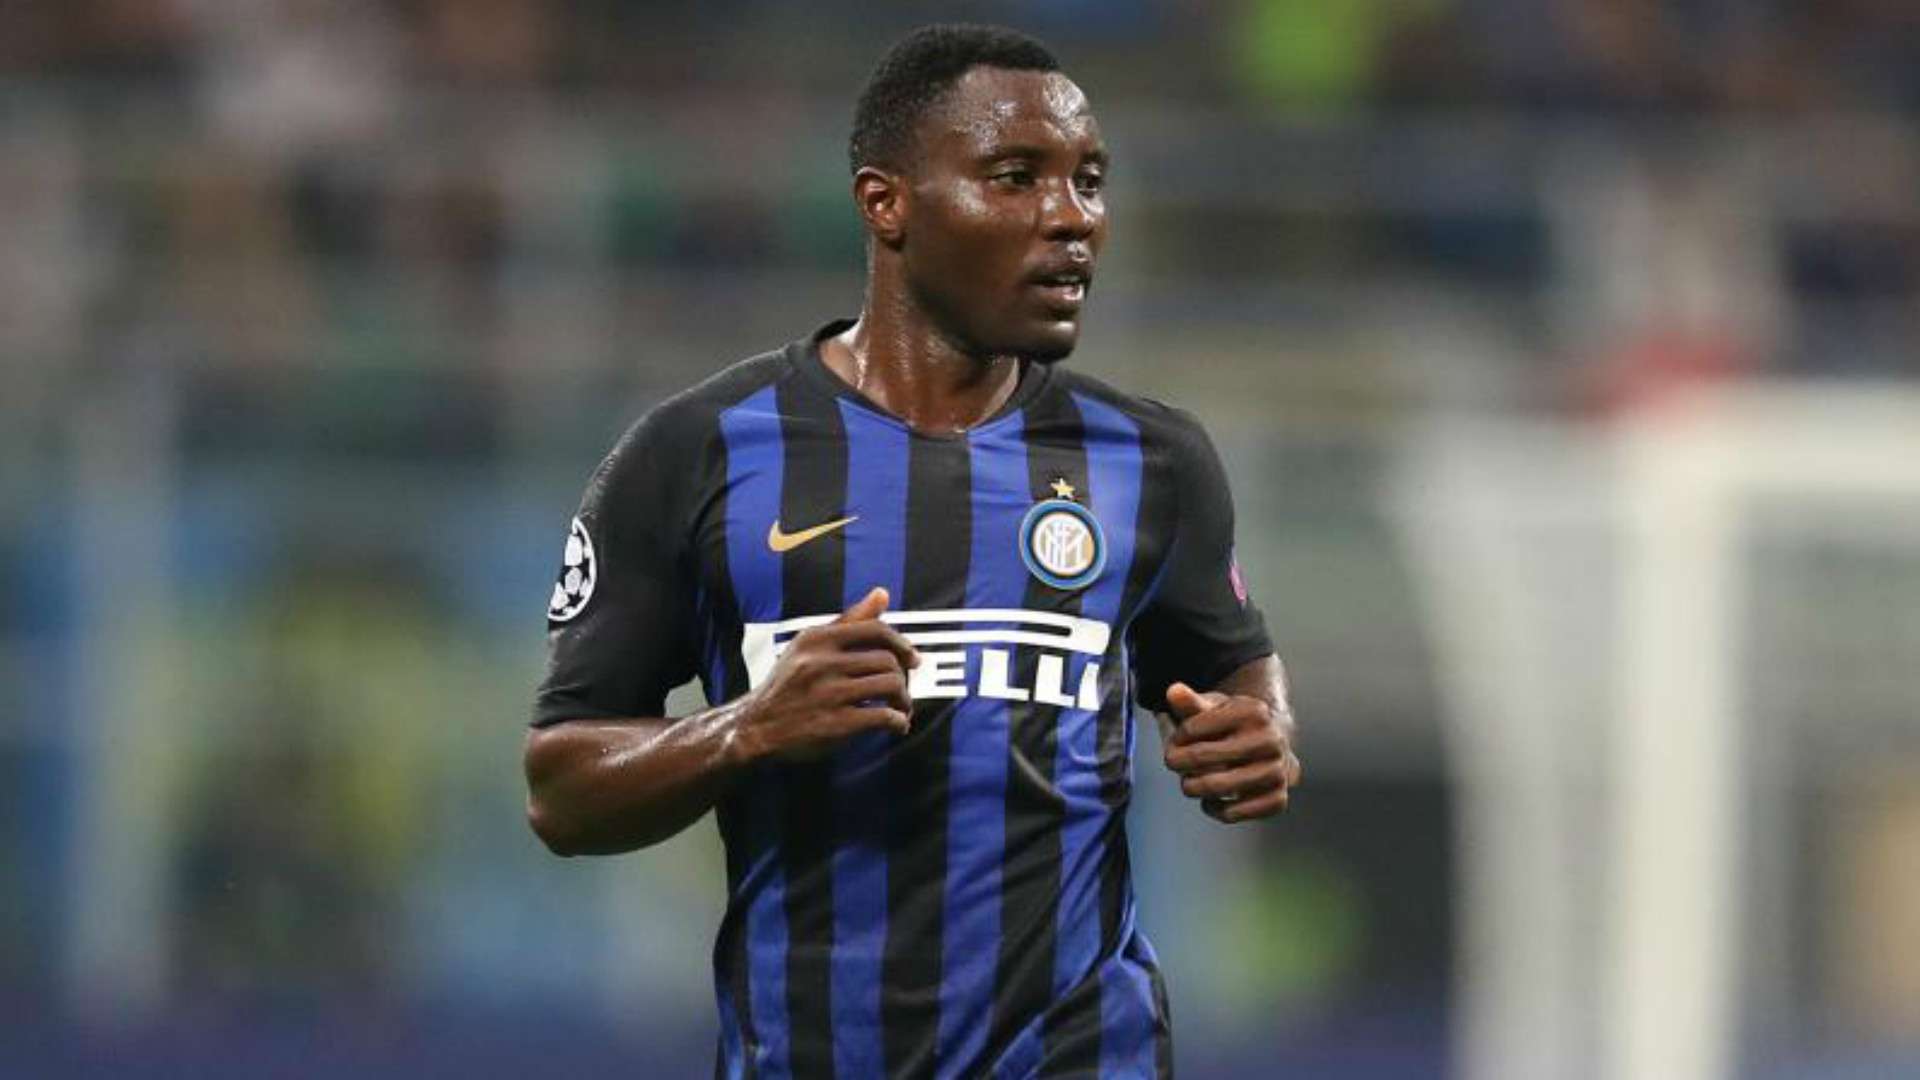 Inter Milan's Kwadwo Asamoah